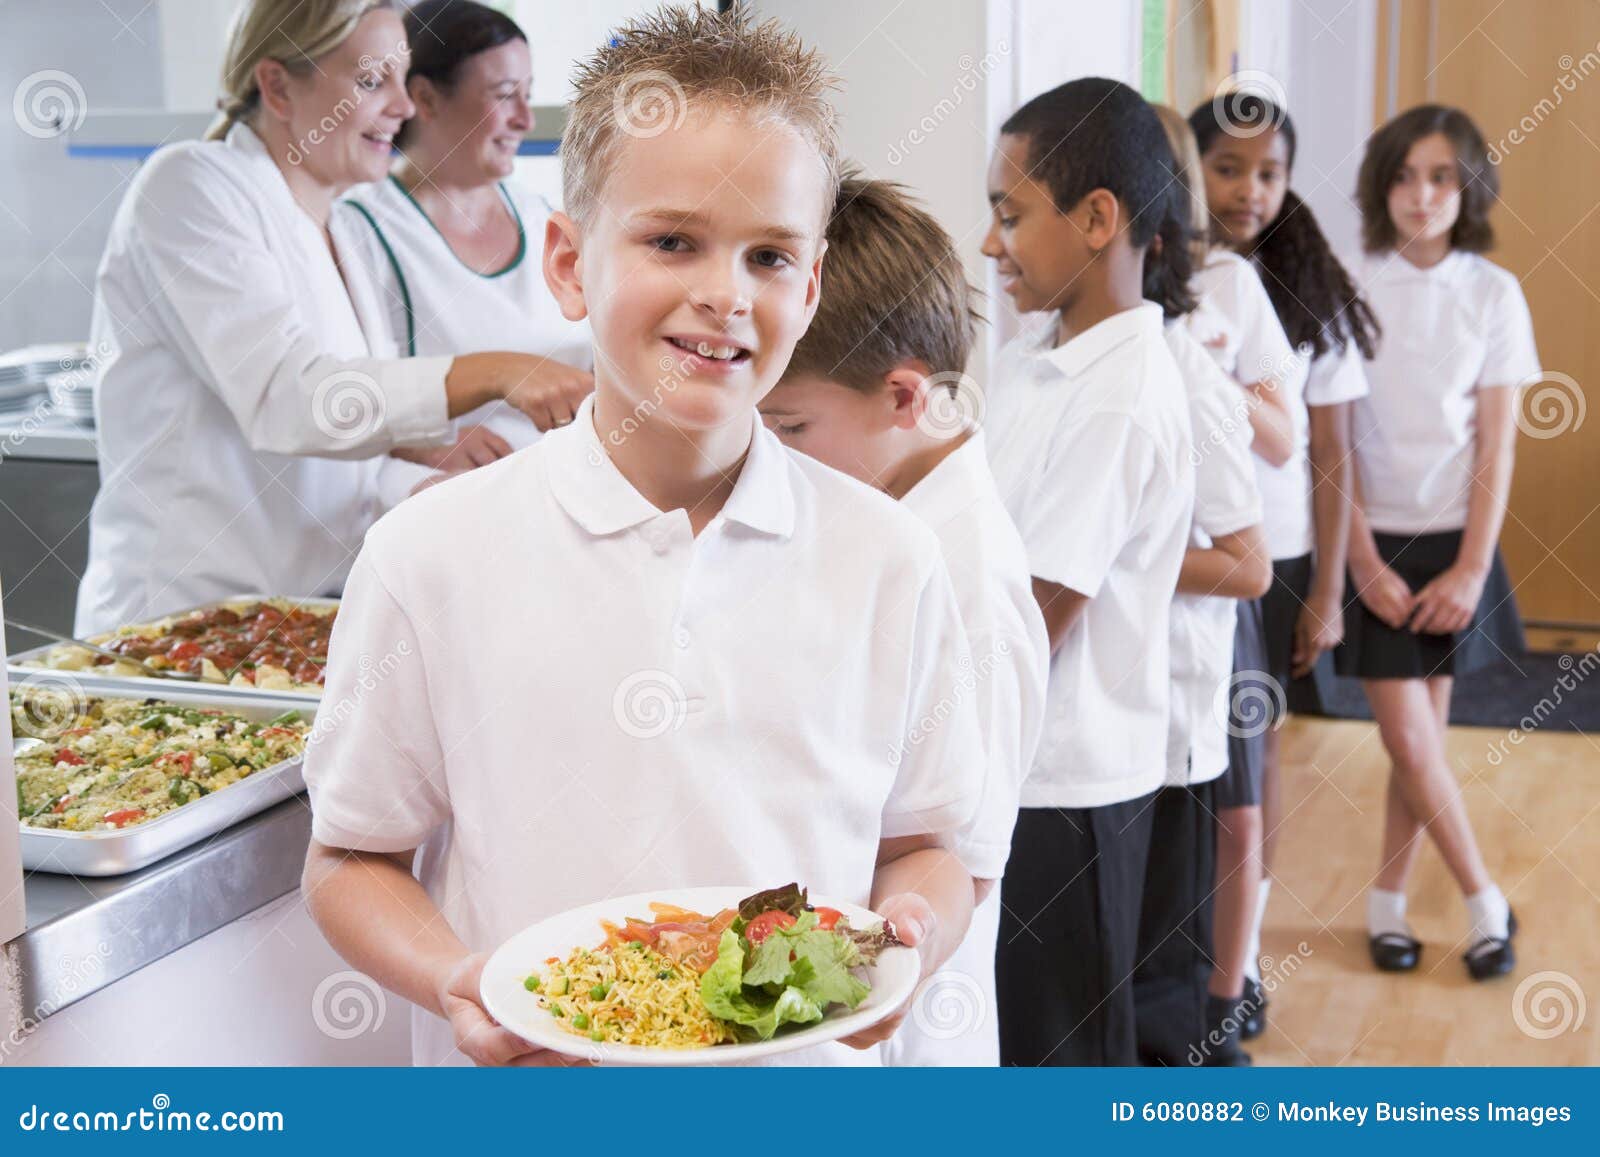 schoolboy in a school cafeteria